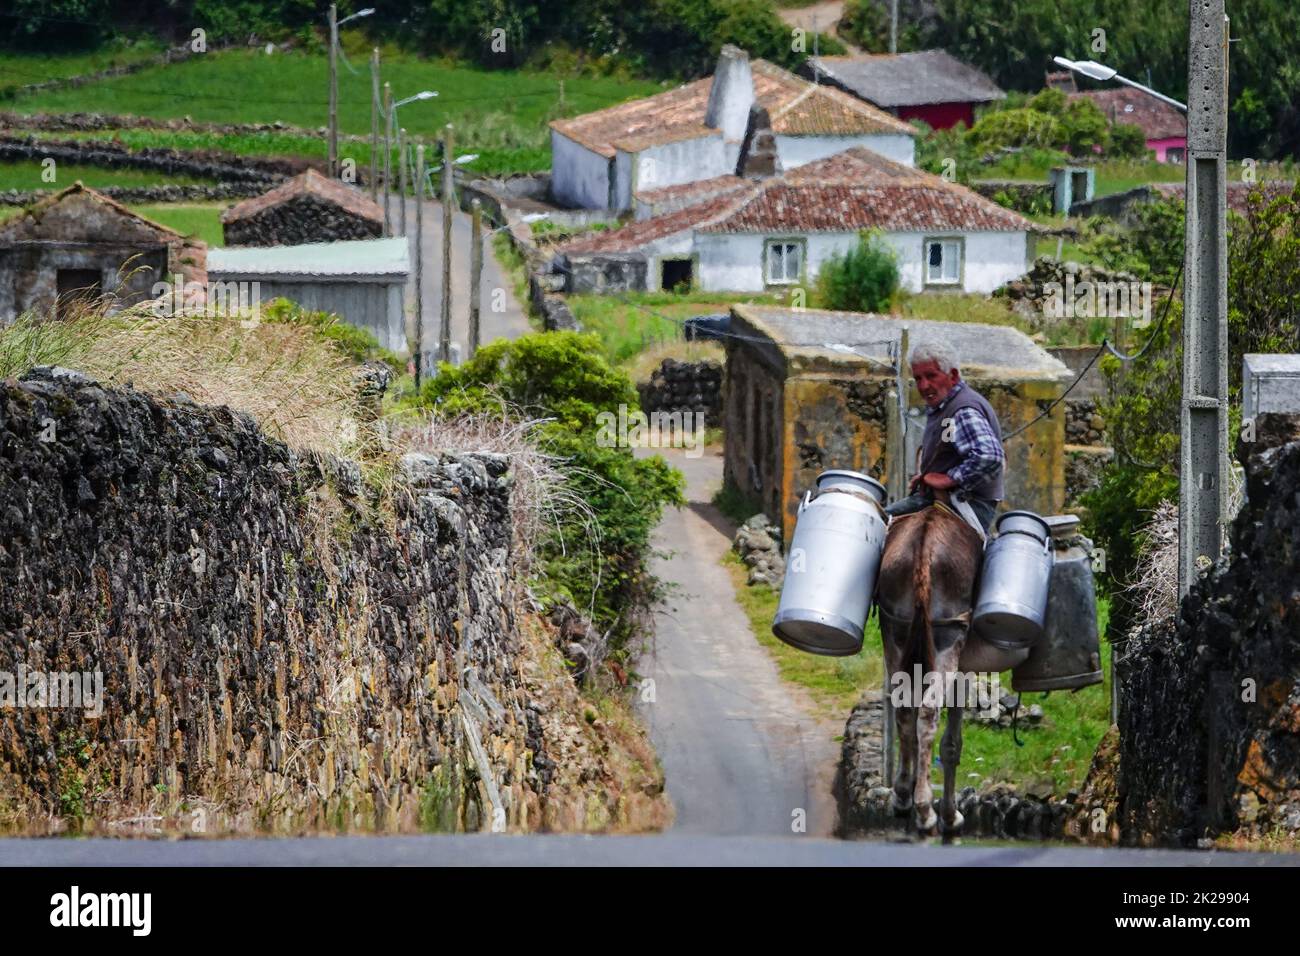 Producteur laitier transportant des canettes de lait sur un âne vers un site de stockage à Villa Nova, île de Terceira, Açores, Portugal. Les Açores sont connues comme terre des vaches heureuses et produisent 30% de toute la production laitière au Portugal. Banque D'Images